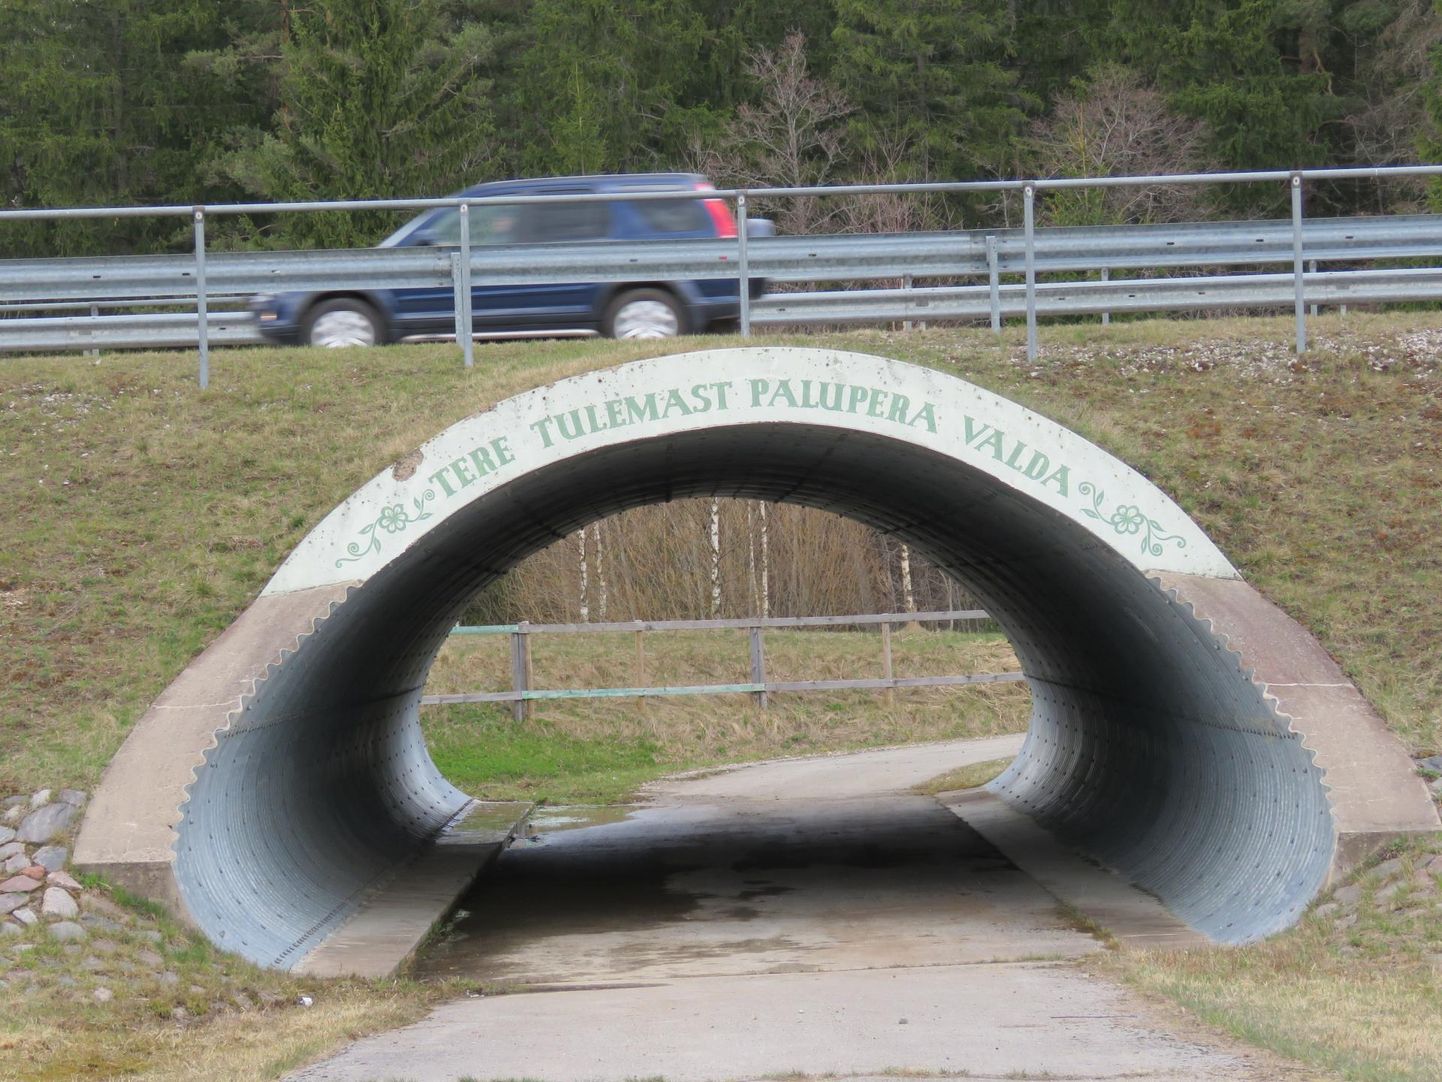 Otepää vallas on olemas üks teealune tunnel: Tartu maratoni rajale jääv Palu suusatunnel Rõngu–Otepää–Kanepi maanteel.